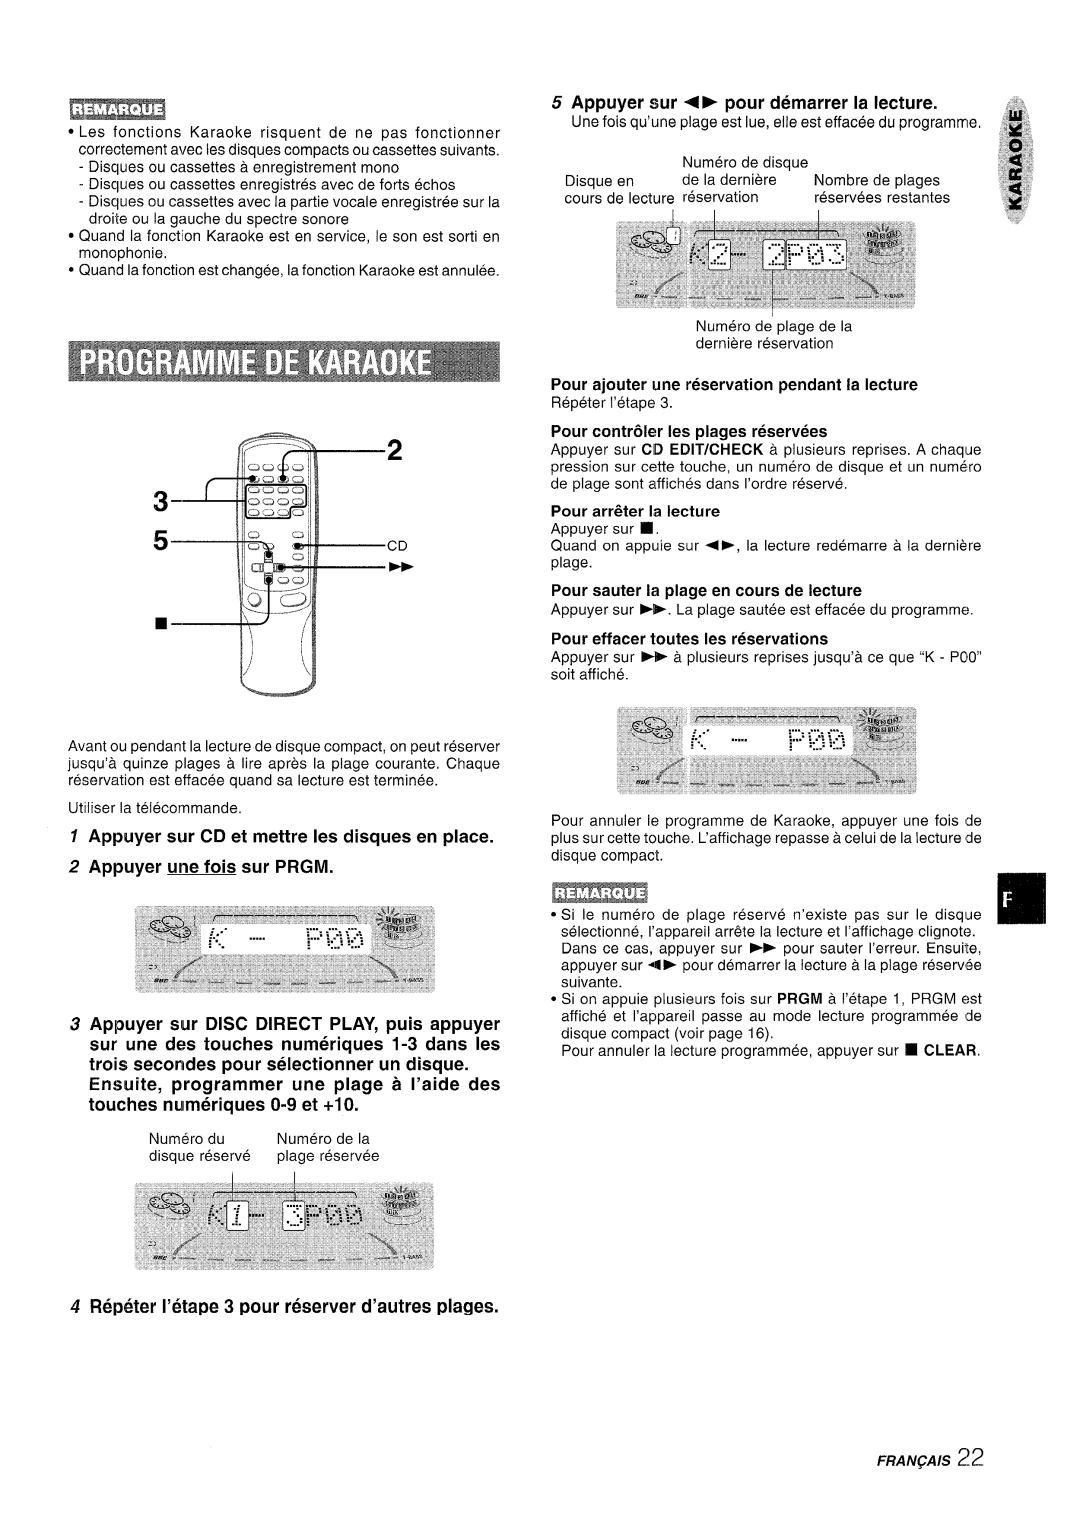 Aiwa NSX-A909 manual 5-CD, f Appuyer sur CD et mettre Ies disques en place, Appuyer une fois sur PRGM, ‘,,b 